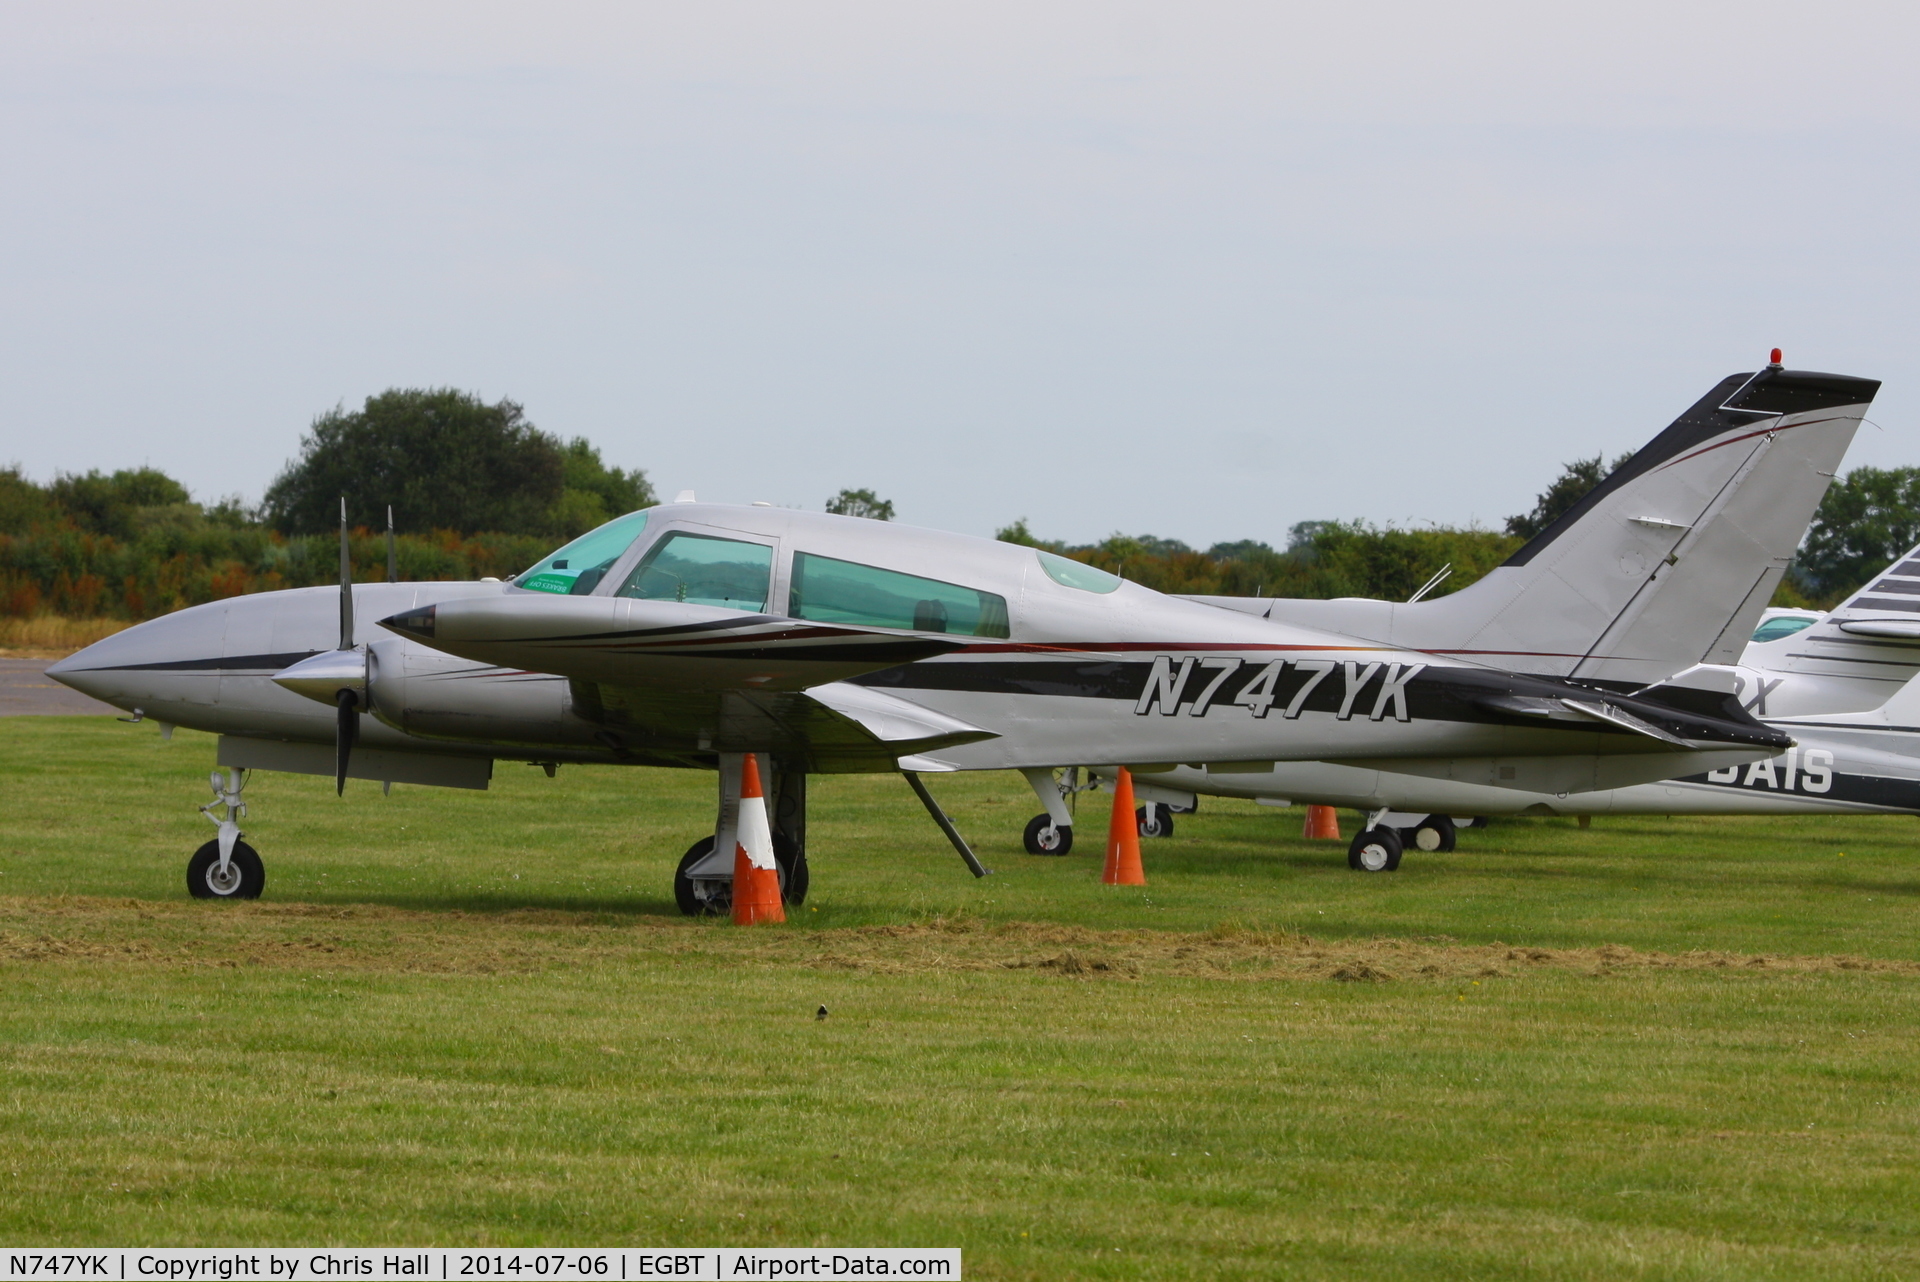 N747YK, 1975 Cessna 310R C/N 310R0138, visitor at Turweston